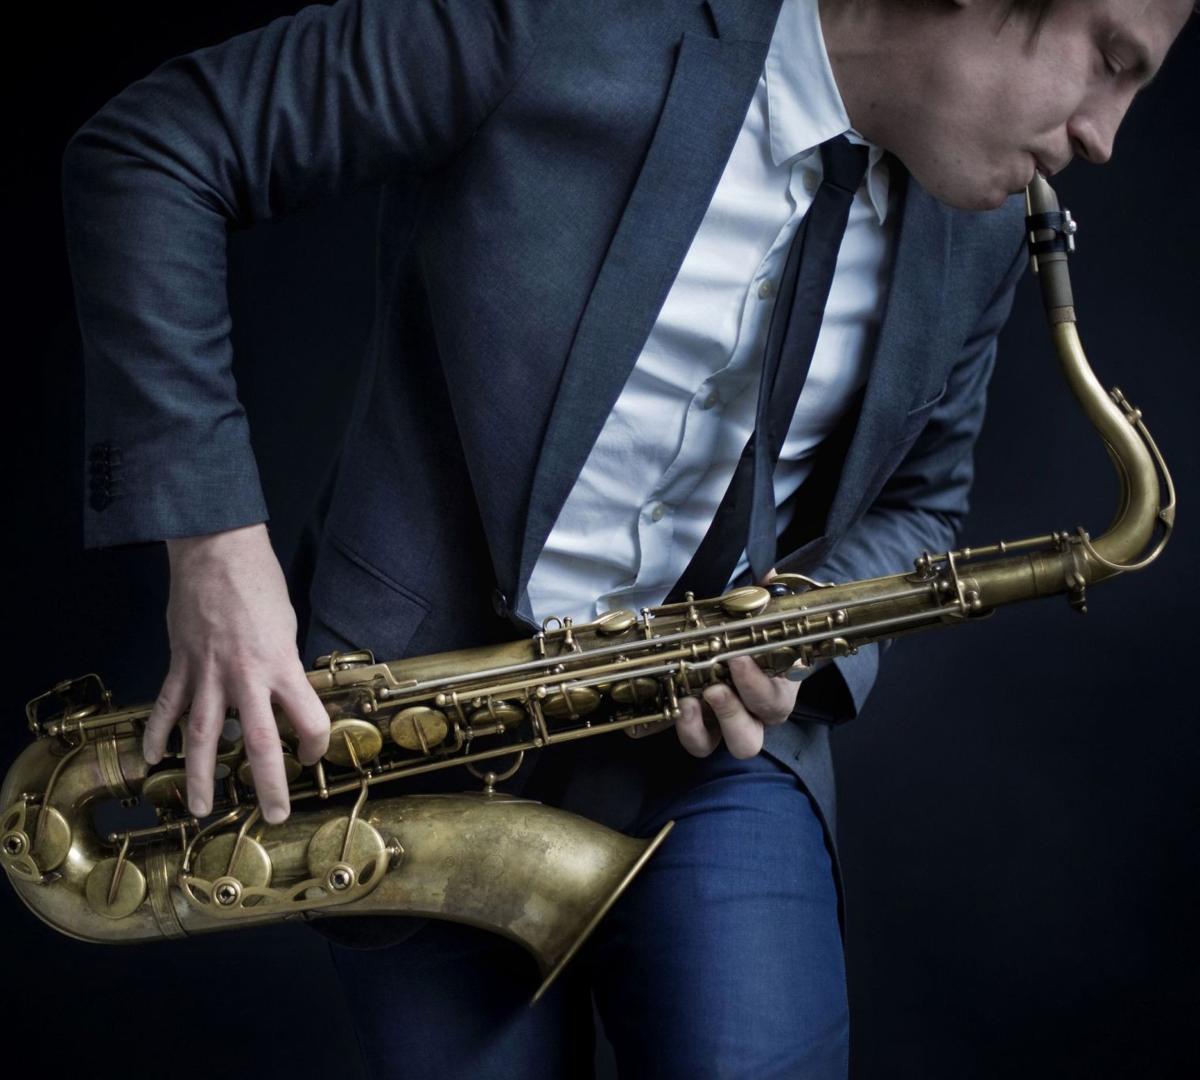 Playing saxophone